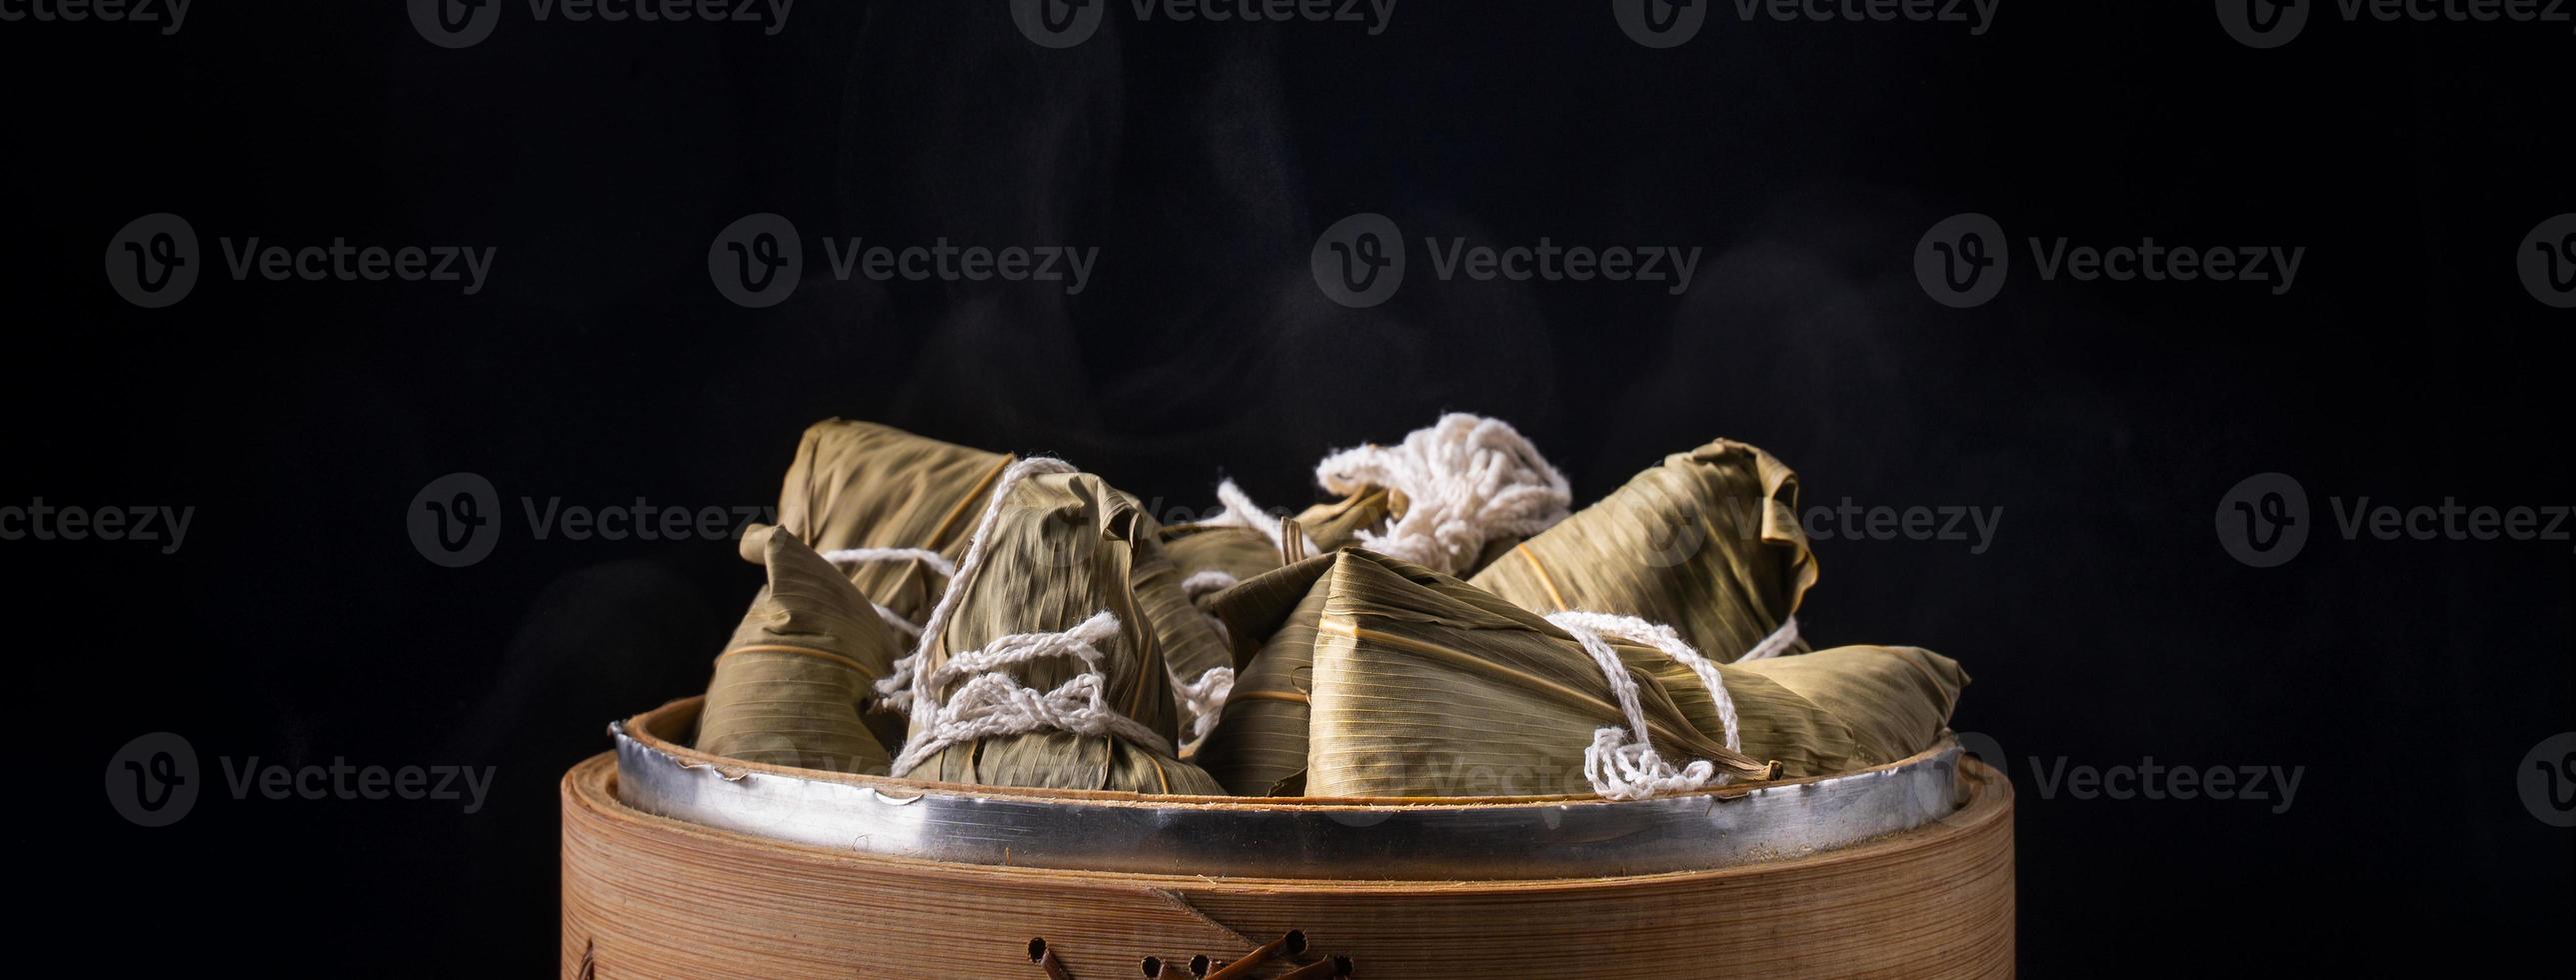 boulette de riz, zongzi - festival des bateaux-dragons, tas de plats cuisinés traditionnels chinois dans un bateau à vapeur sur une table en bois sur fond noir, gros plan, espace pour copie photo